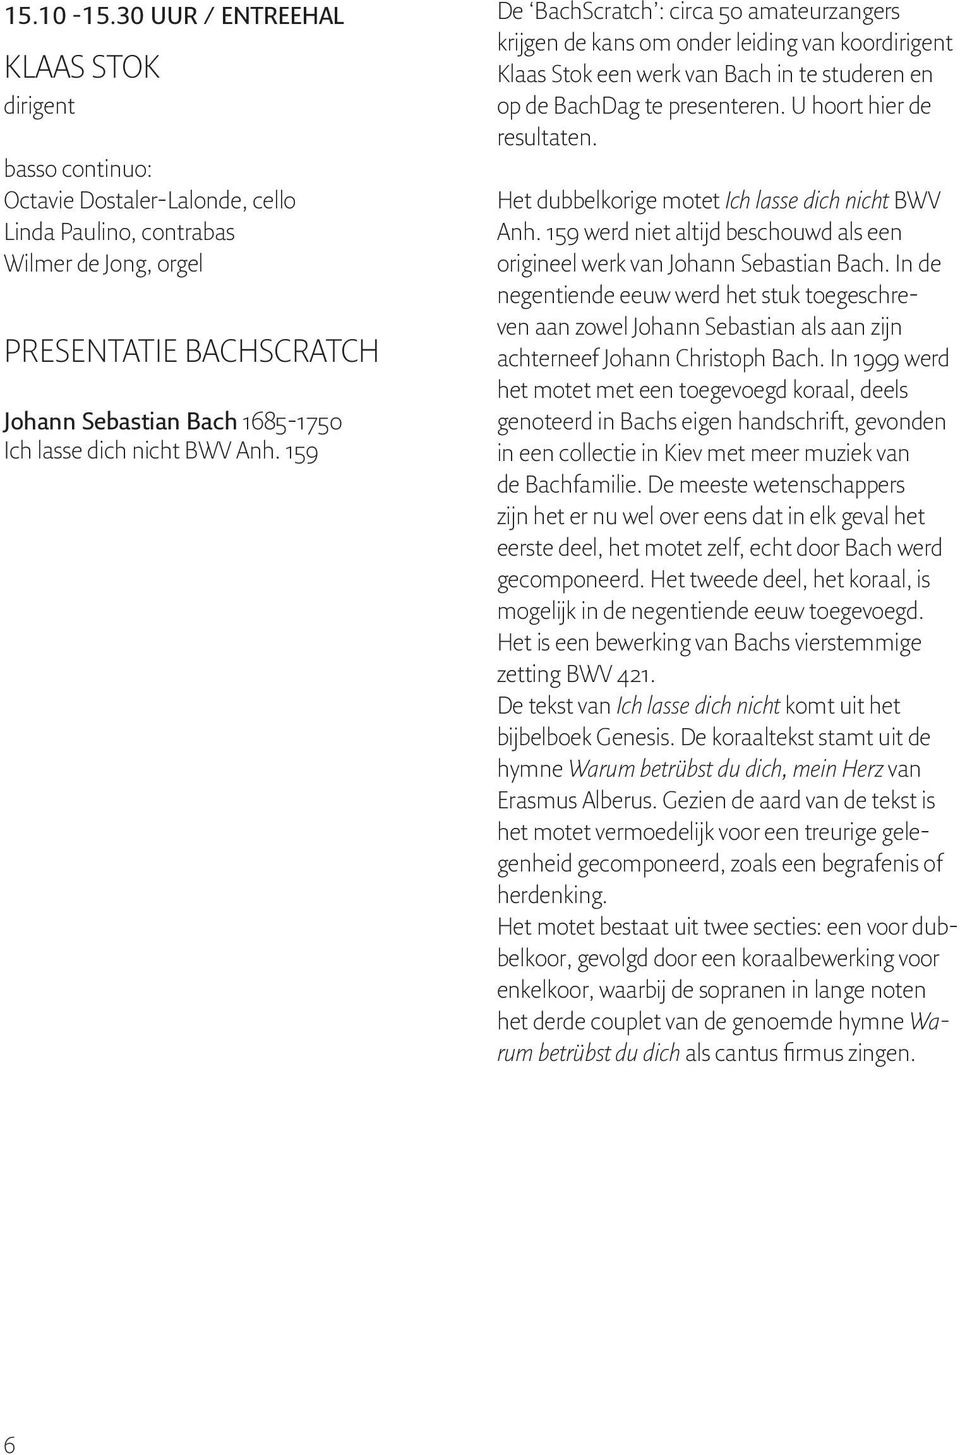 dich nicht BWV Anh. 159 De BachScratch : circa 50 amateurzangers krijgen de kans om onder leiding van koordirigent Klaas Stok een werk van Bach in te studeren en op de BachDag te presenteren.